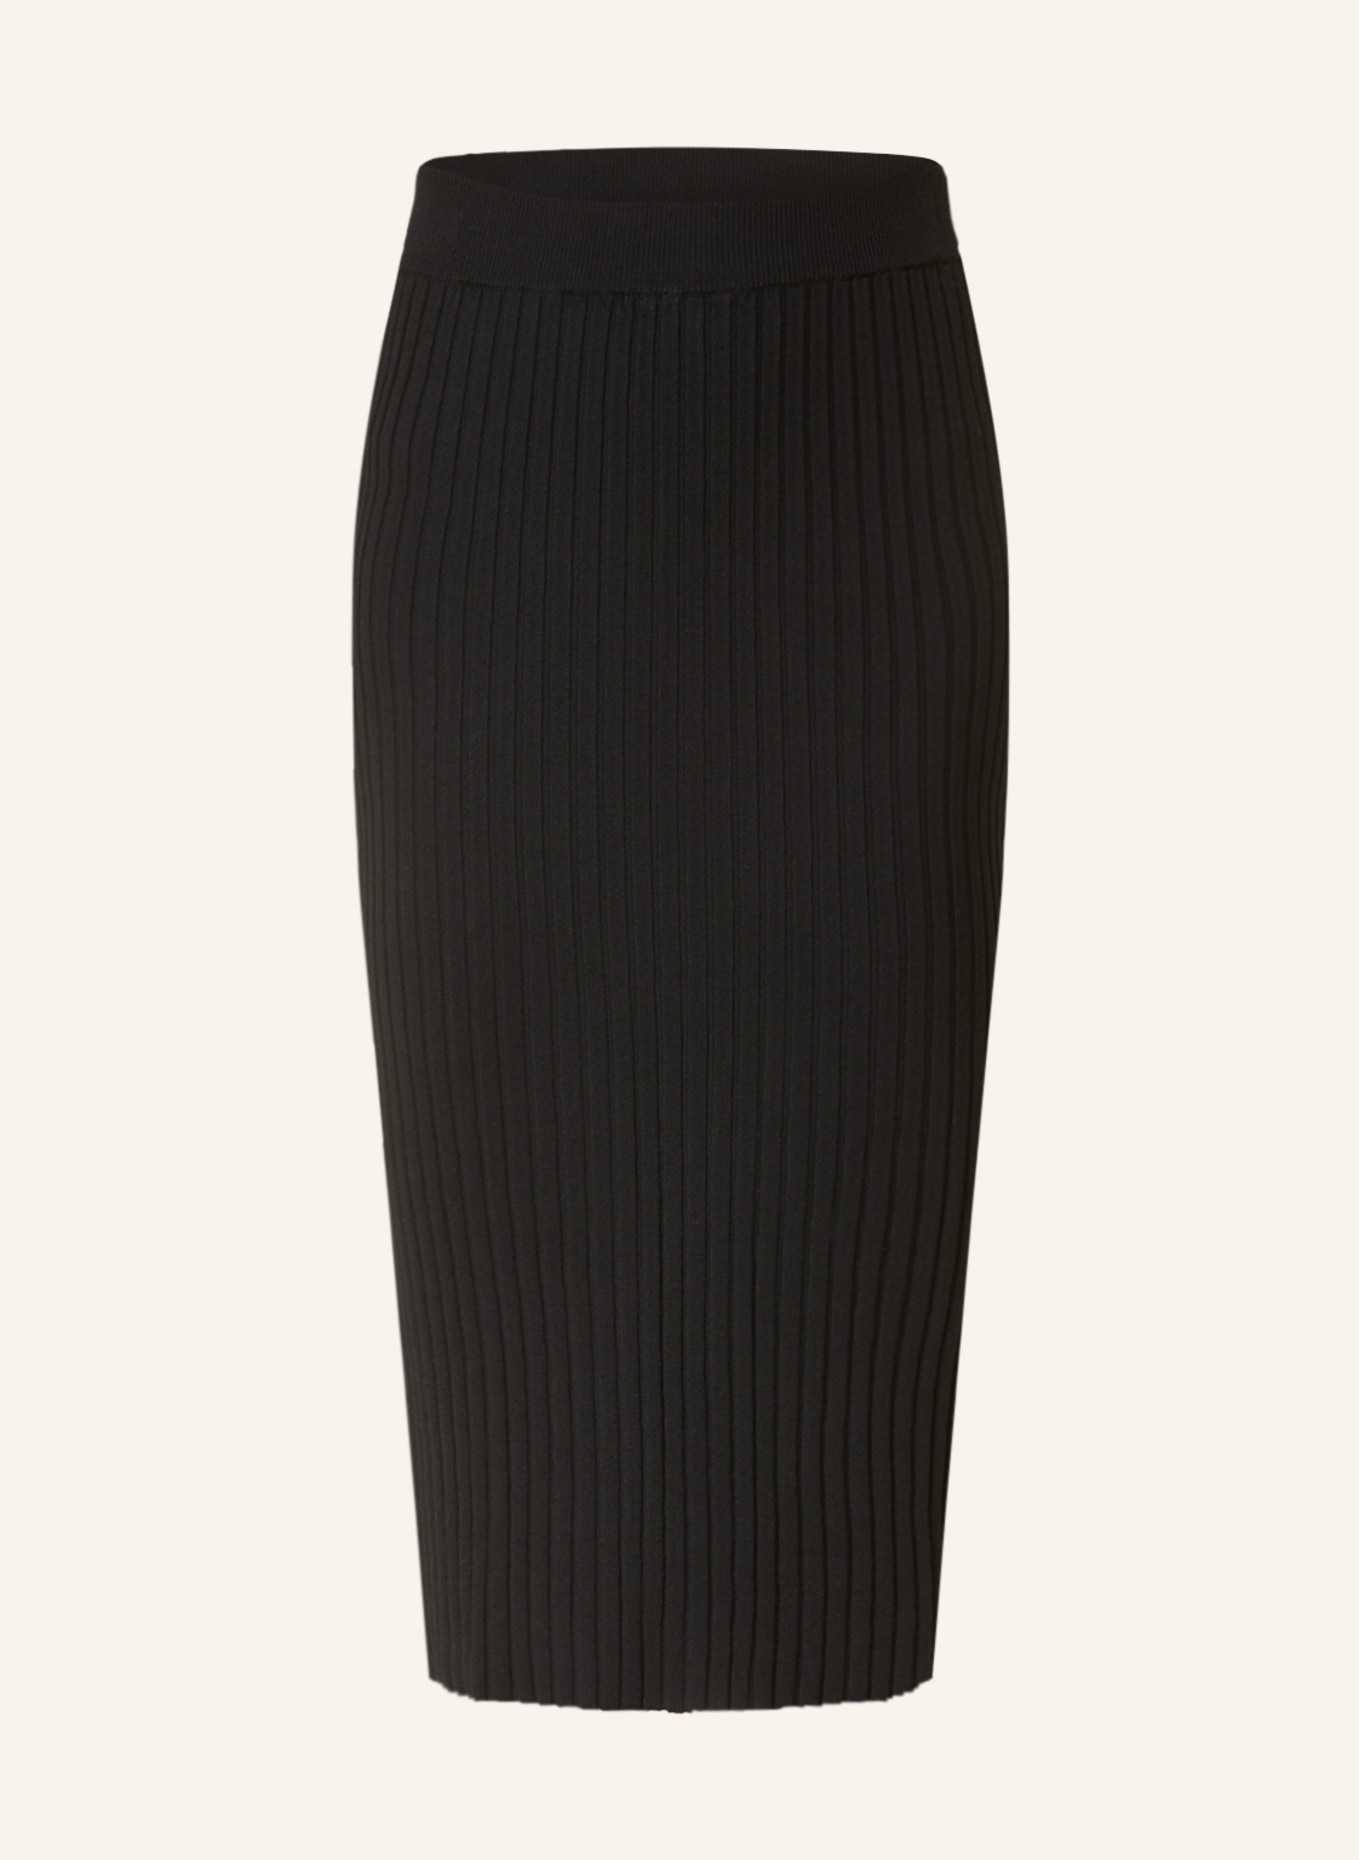 darling harbour Knit skirt, Color: BLACK (Image 1)